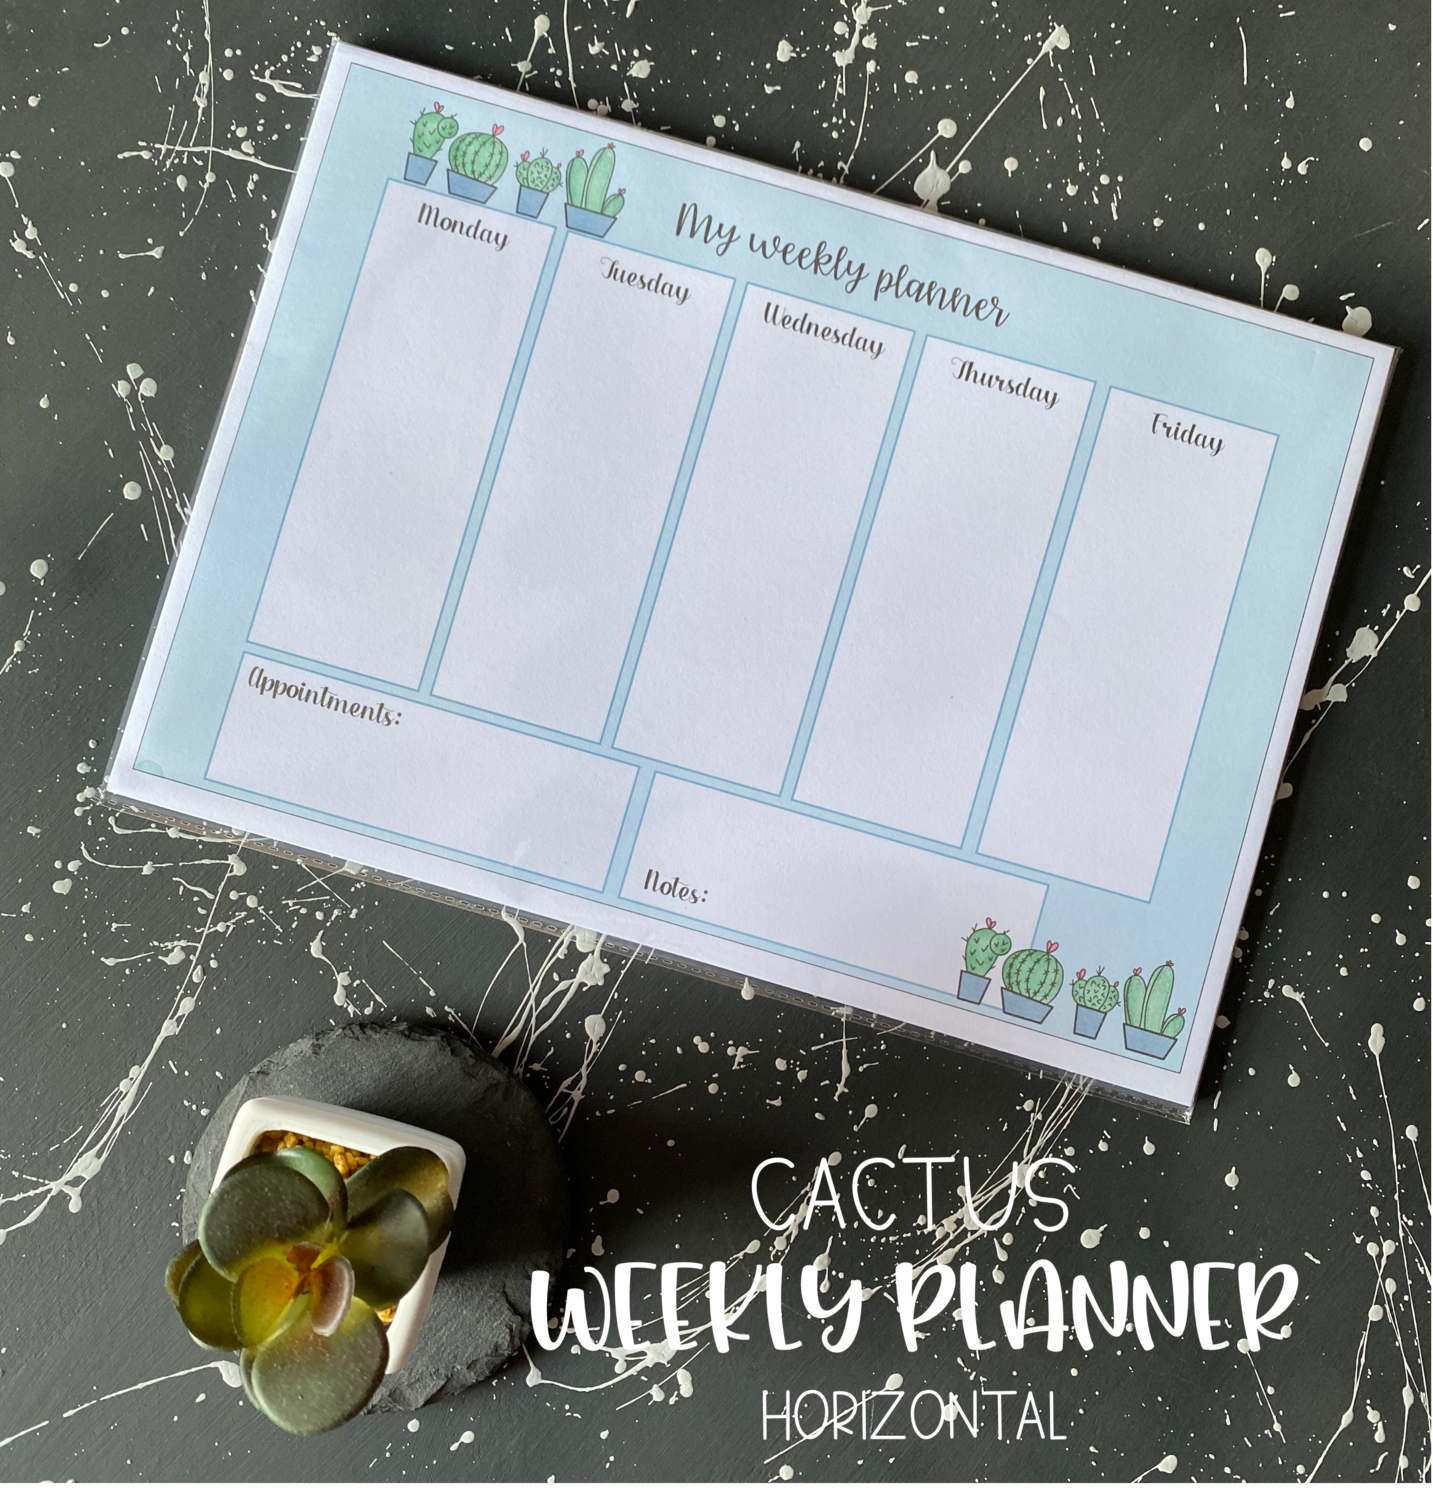 Cactus Weekly Planner